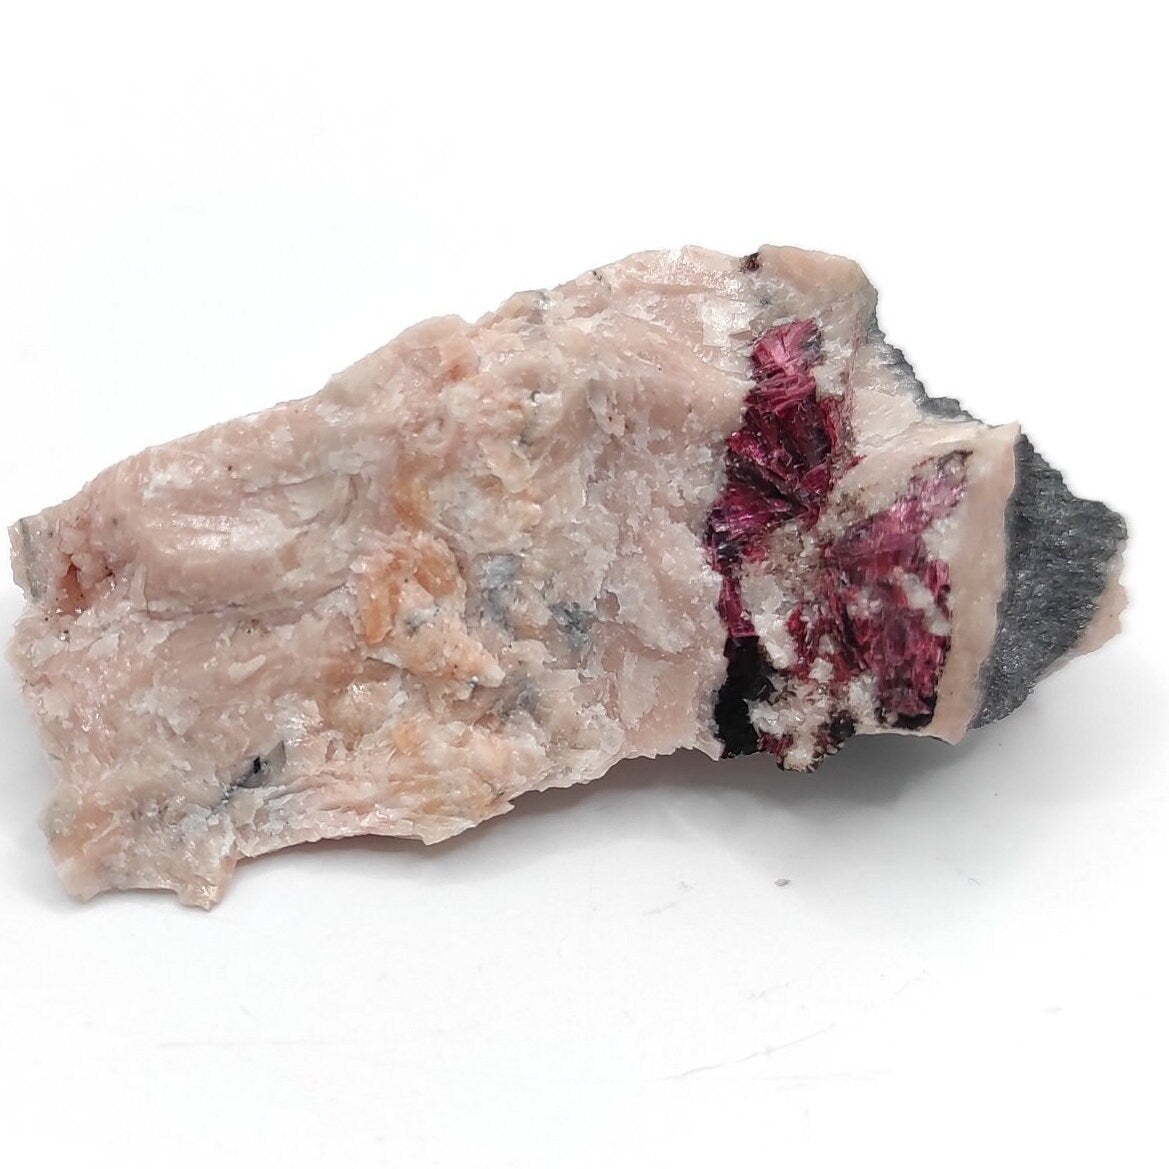 14g Erythrite Mineral Specimen - Bou Azzer, Morocco - Rare Erythrite Crystal Specimen - Cobalt Bloom Crystal - Raw Cobalt Crystal